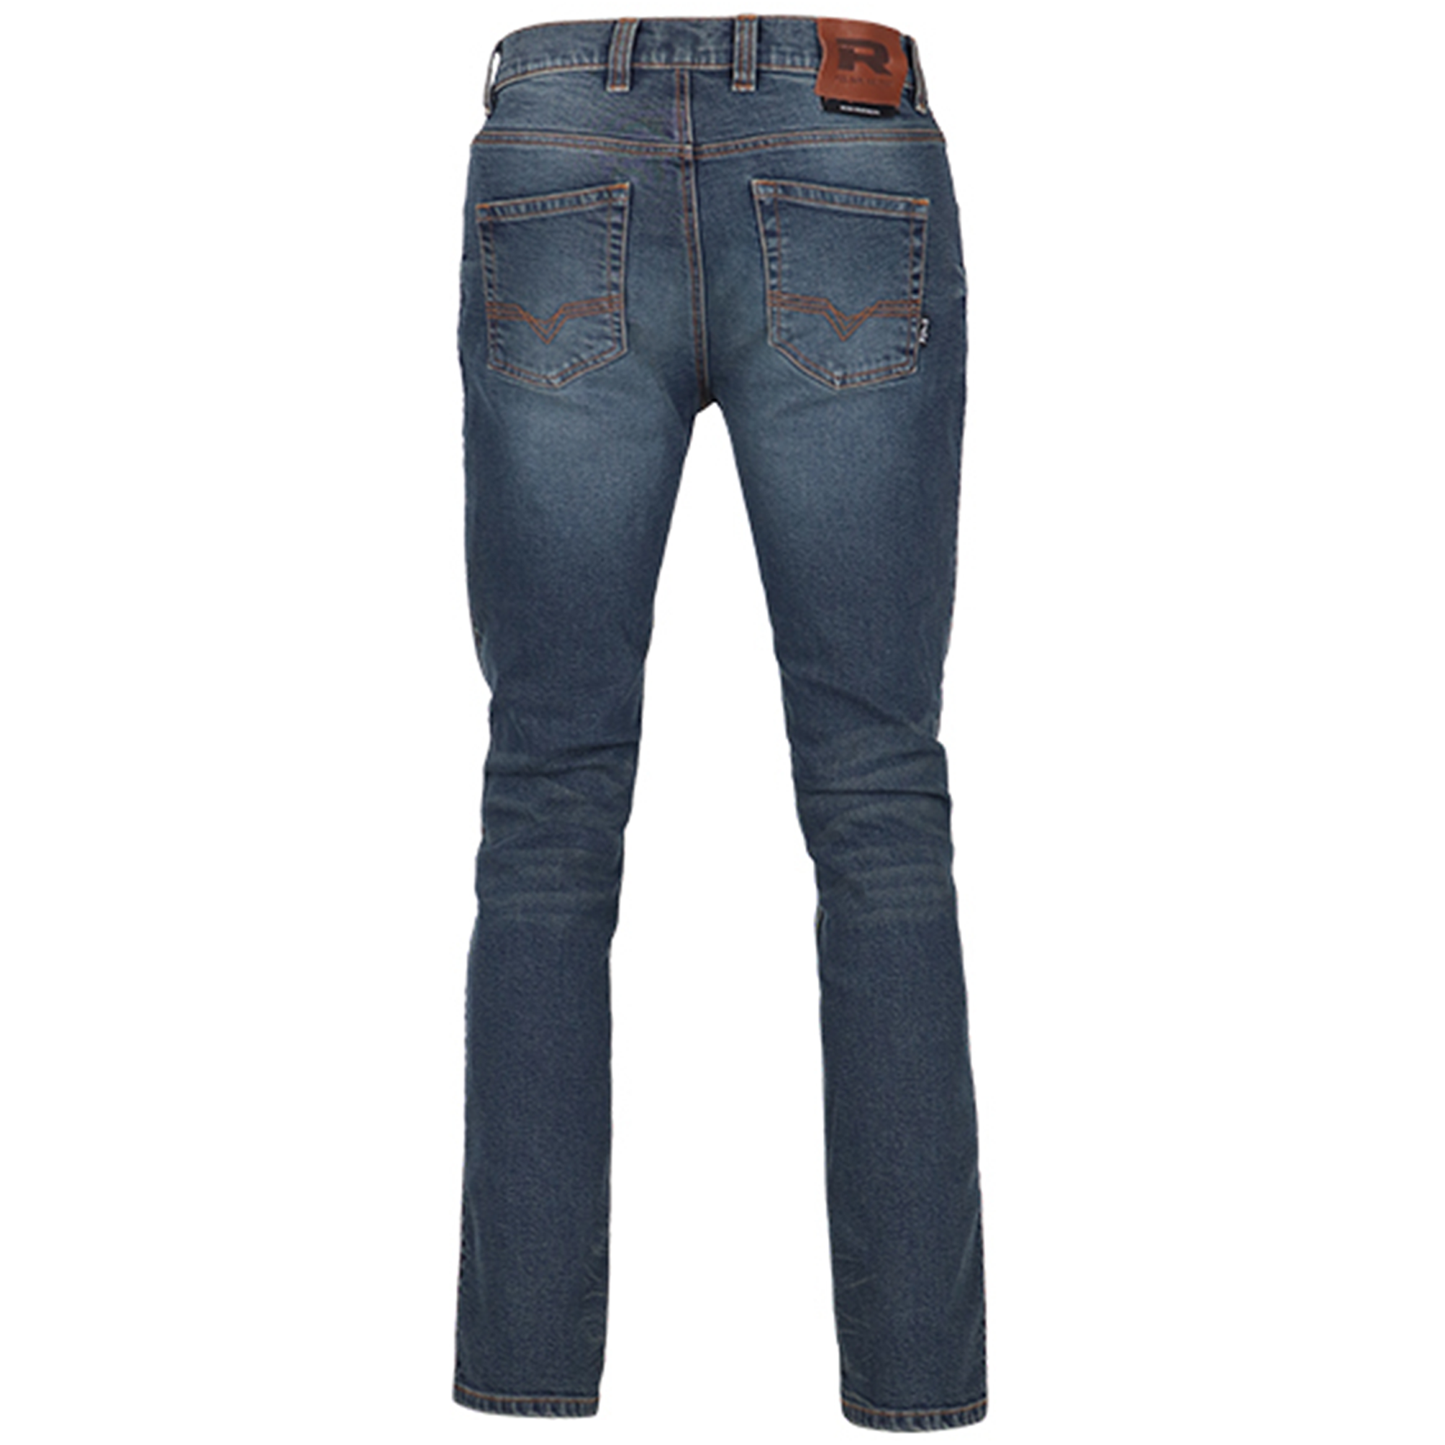 Richa Original 2 Slim Fit Regular Jeans - Washed Blue